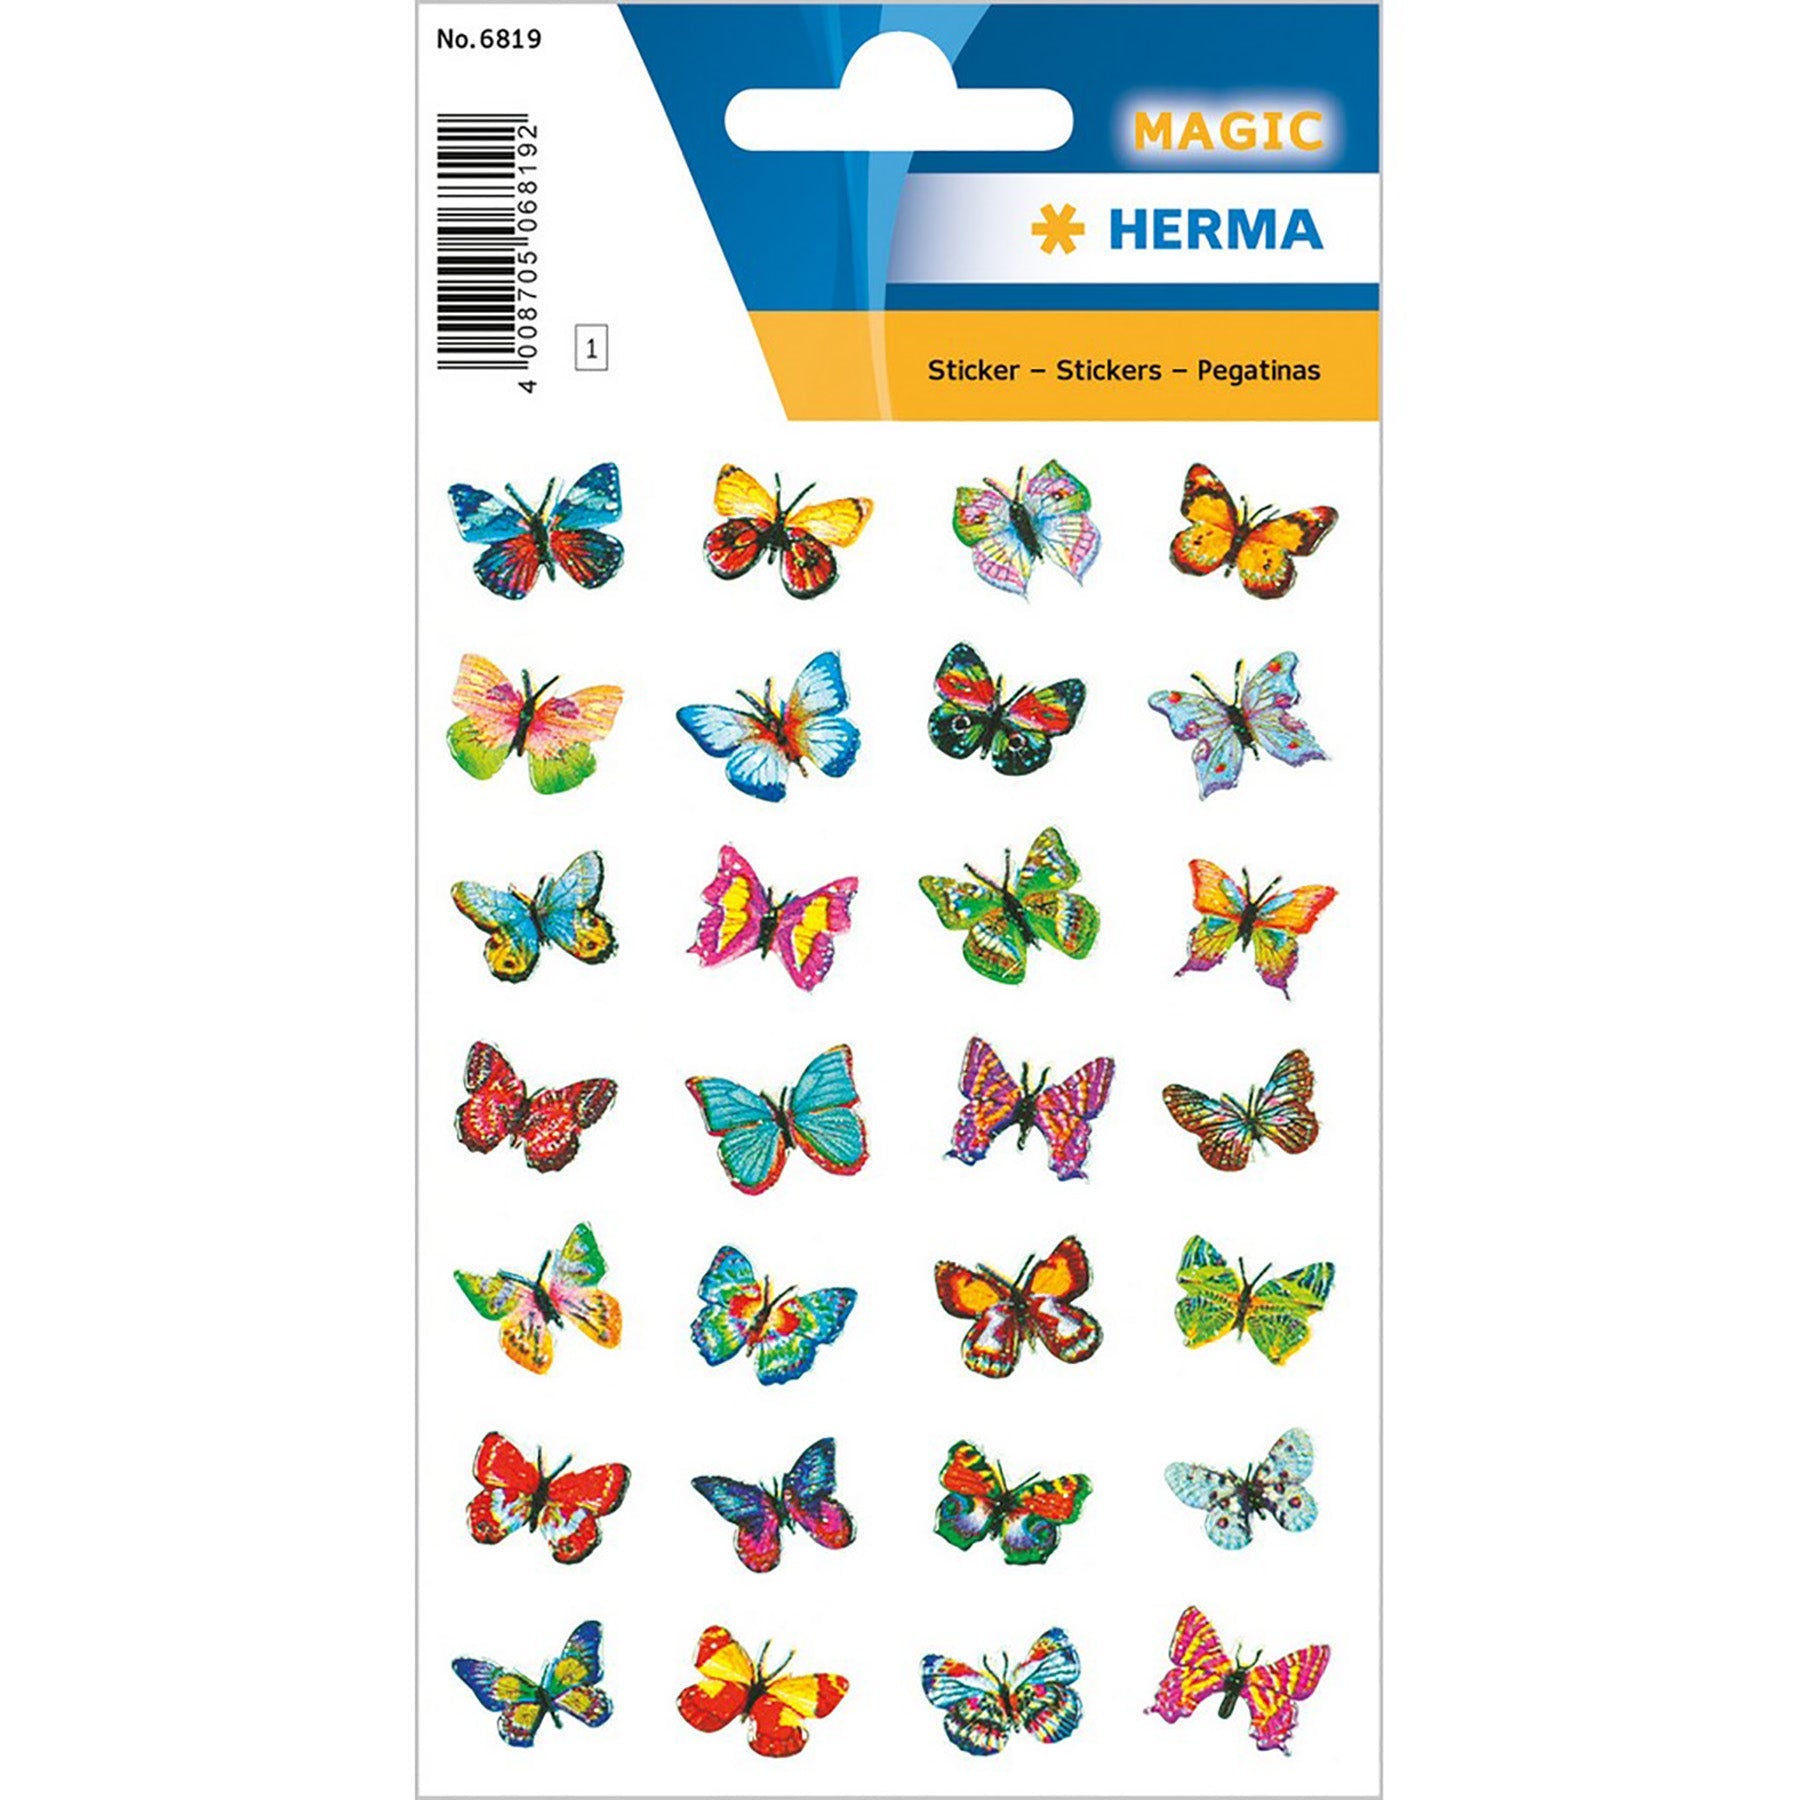 Herma Magic Stickers Butterflies Glittery Foil 4.75x3.1in Sheet